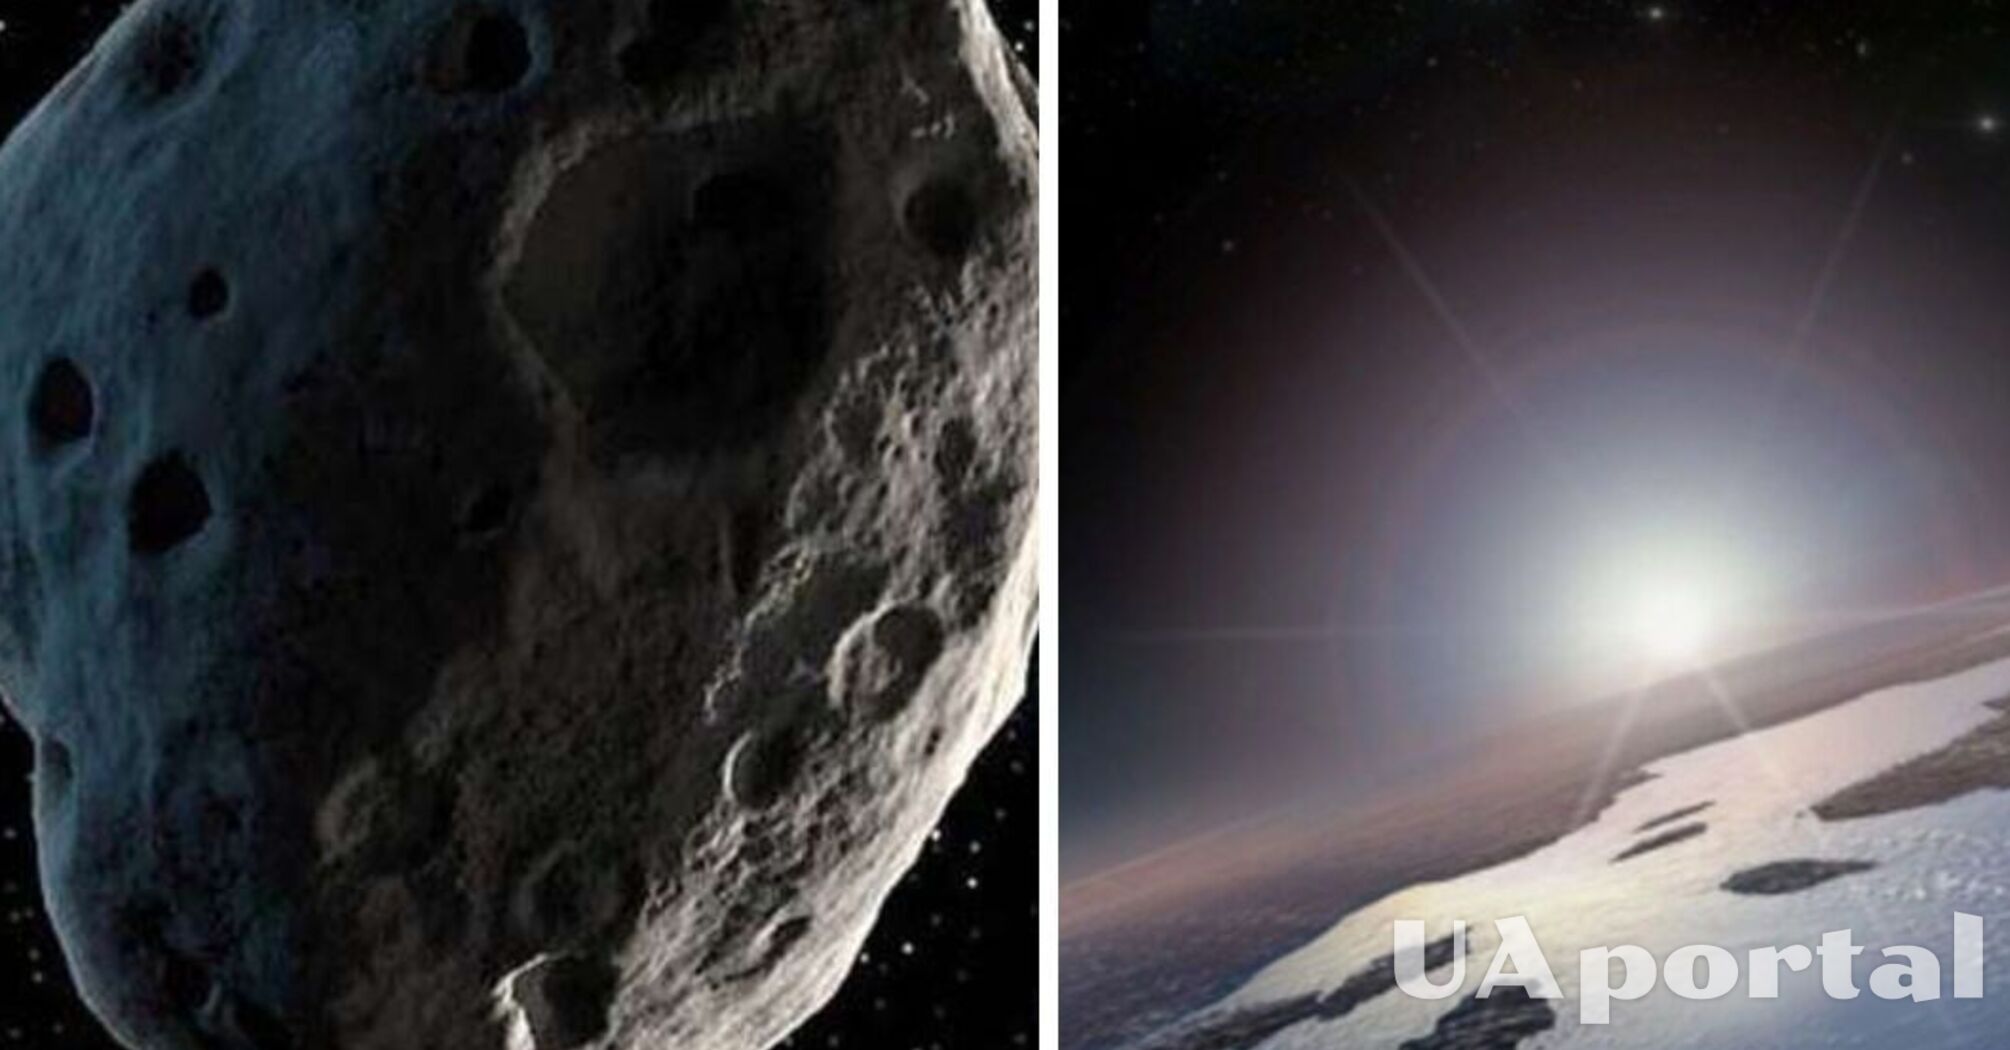 В NASA предупредили об астероиде, который может столкнуться с Землей в День влюбленных: названа точная дата